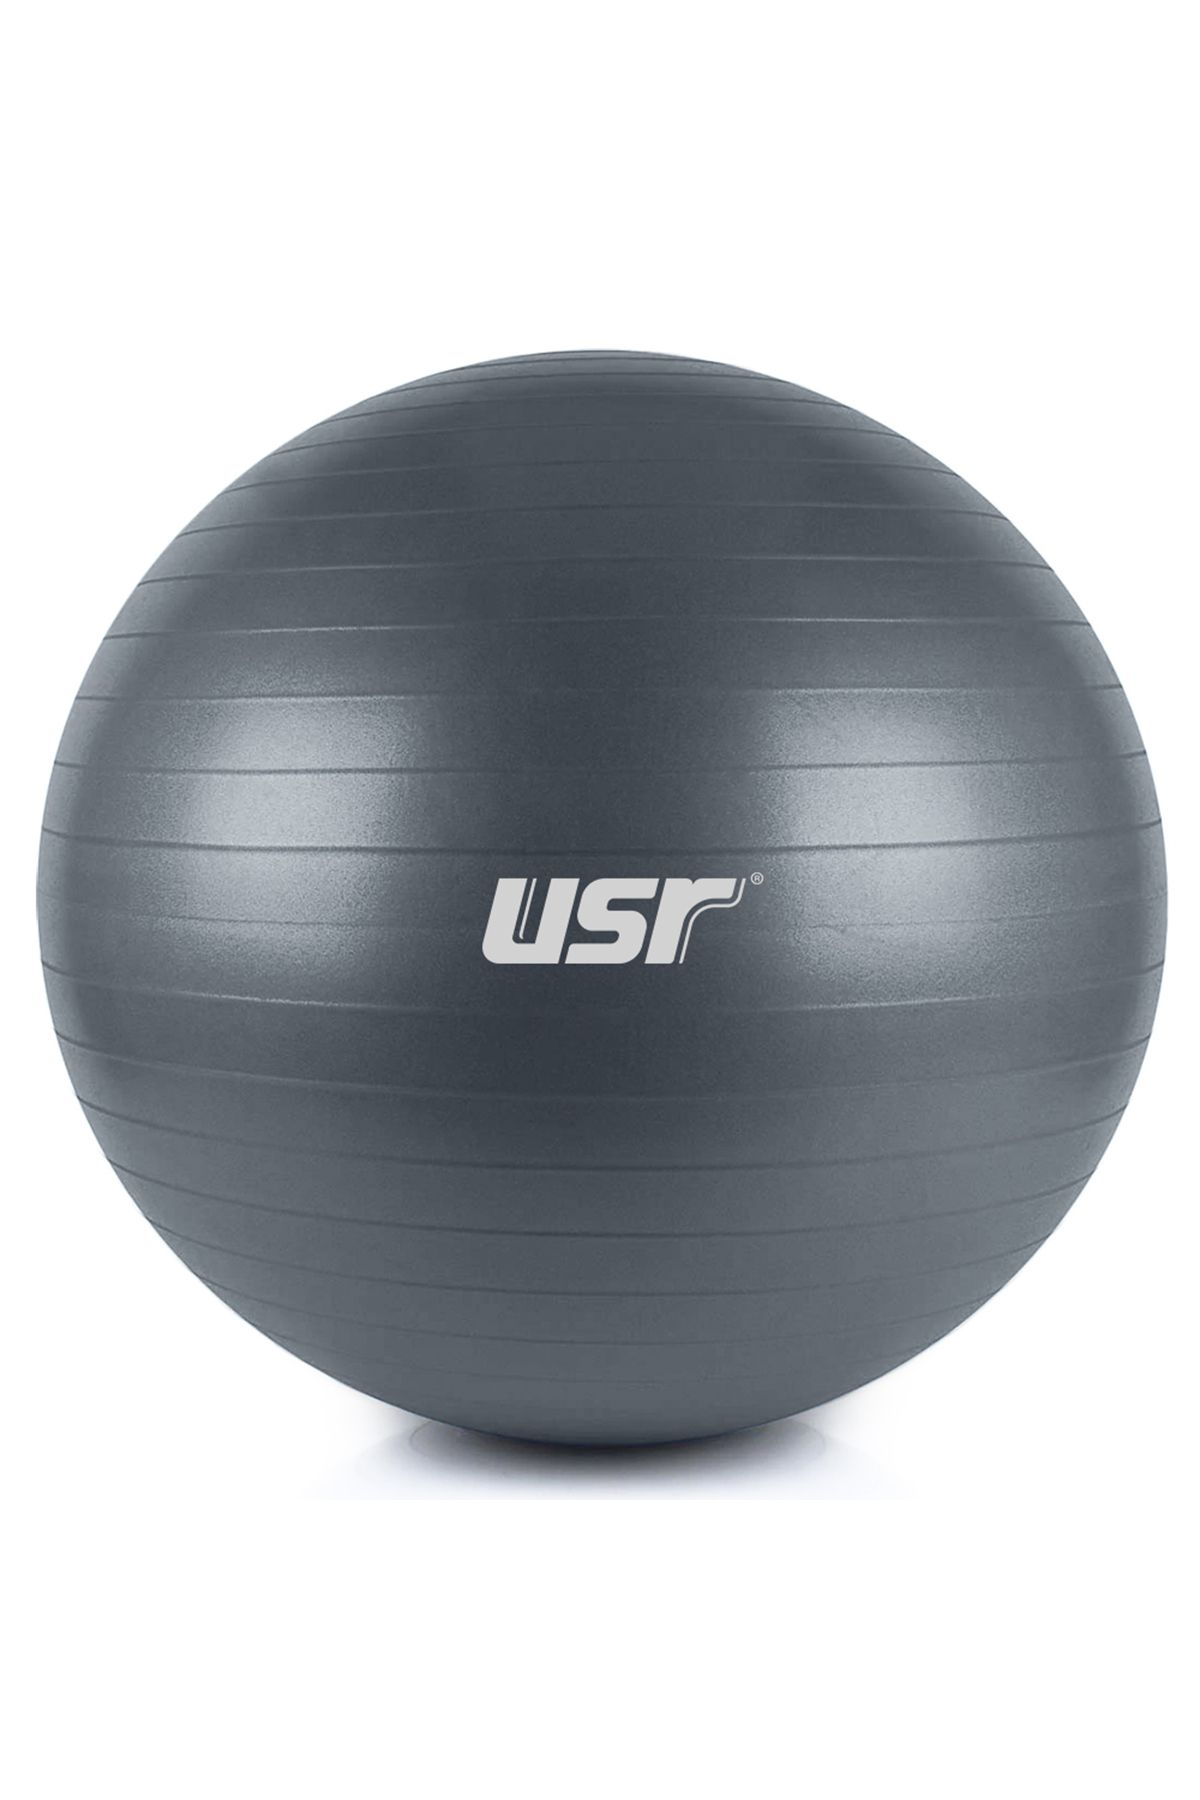 Usr Gb653 65 Cm. Pilates Topu